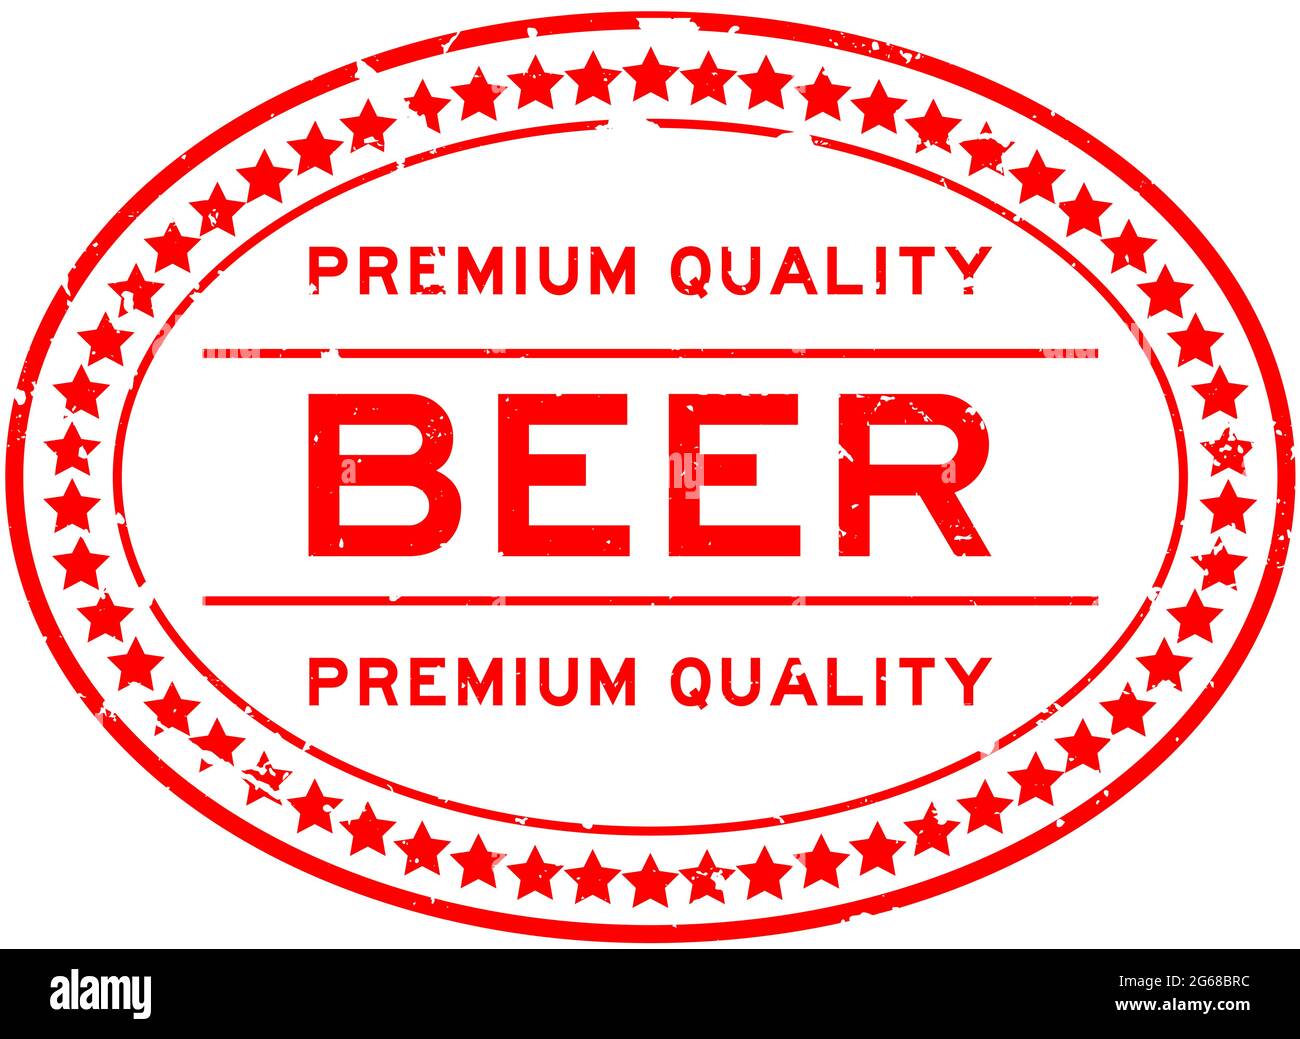 Grunge rot Premium Qualität Bier Wort oval Gummi Stempel auf weißem Hintergrund Stock Vektor